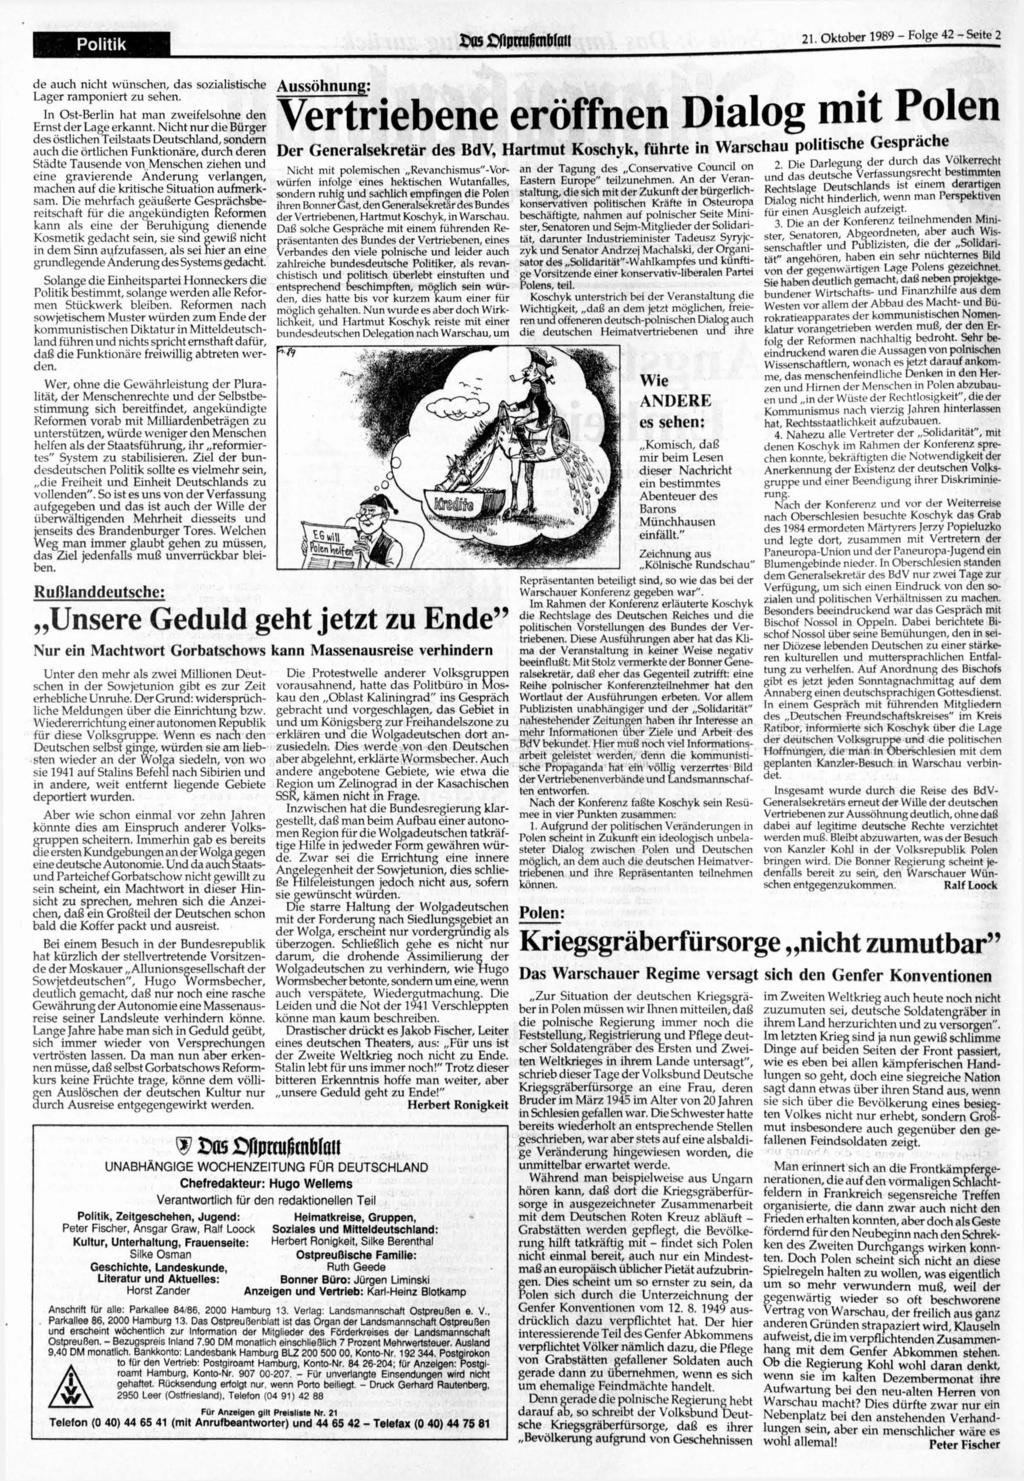 Politik os fipmi8tnbtai! 21. 1989 - Folge 42-Seite 2 de auch nicht wünschen, das sozialistische Lager ramponiert zu sehen. In Ost-Berlin hat man zweifelsohne den Ernst der Lage erkannt.